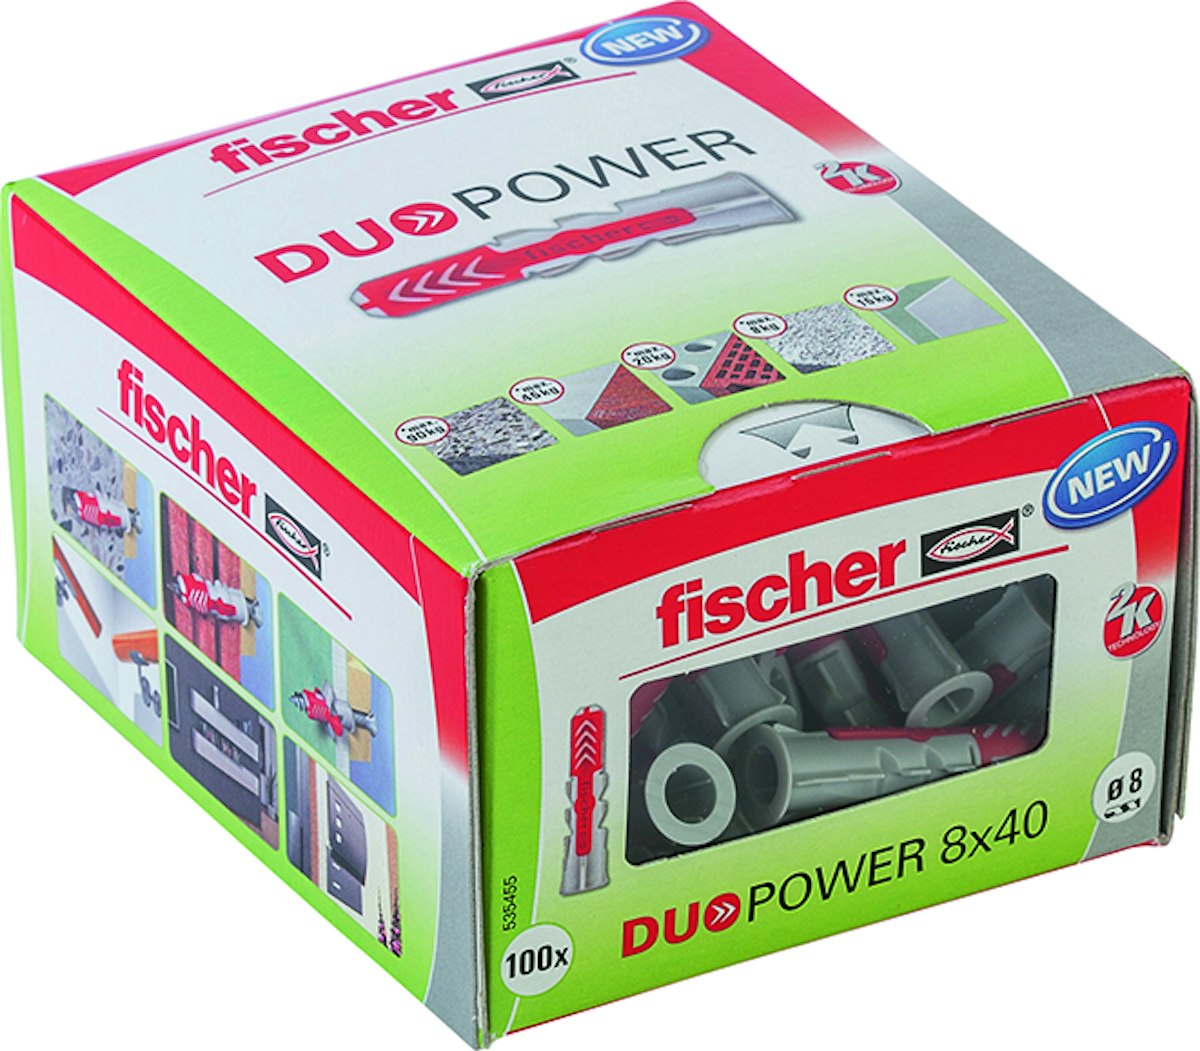 FISCHER Universaldübel Duopower 8x40 LD von fischerwerke GmbH & Co. KG